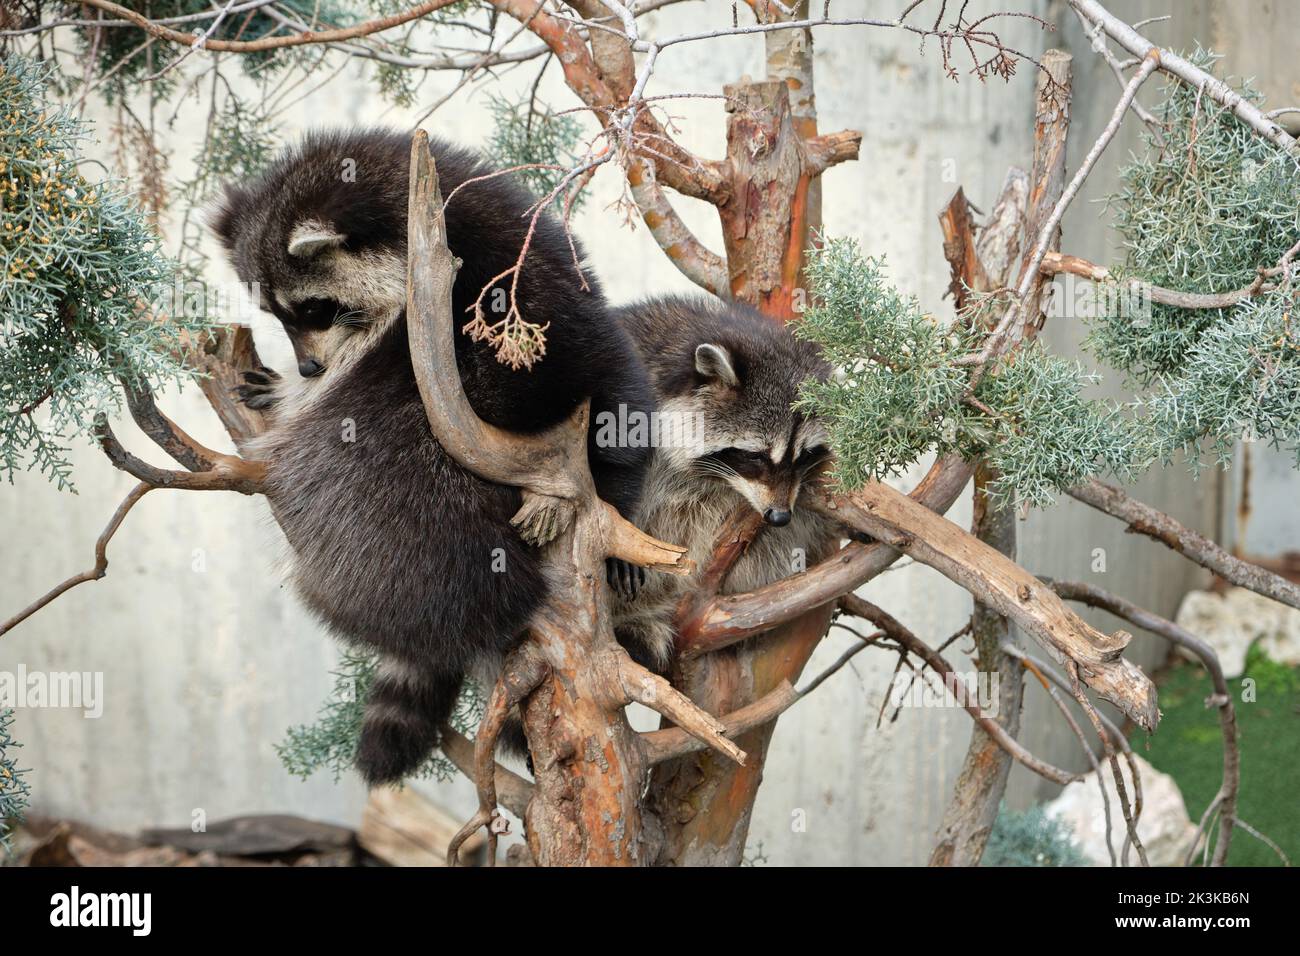 Le panda rouge alias le panda inférieur avec une fourrure dense brun rougeâtre avec un ventre et des jambes noirs, des oreilles bordées de blanc, un museau pour la plupart blanc et une queue annelée Banque D'Images